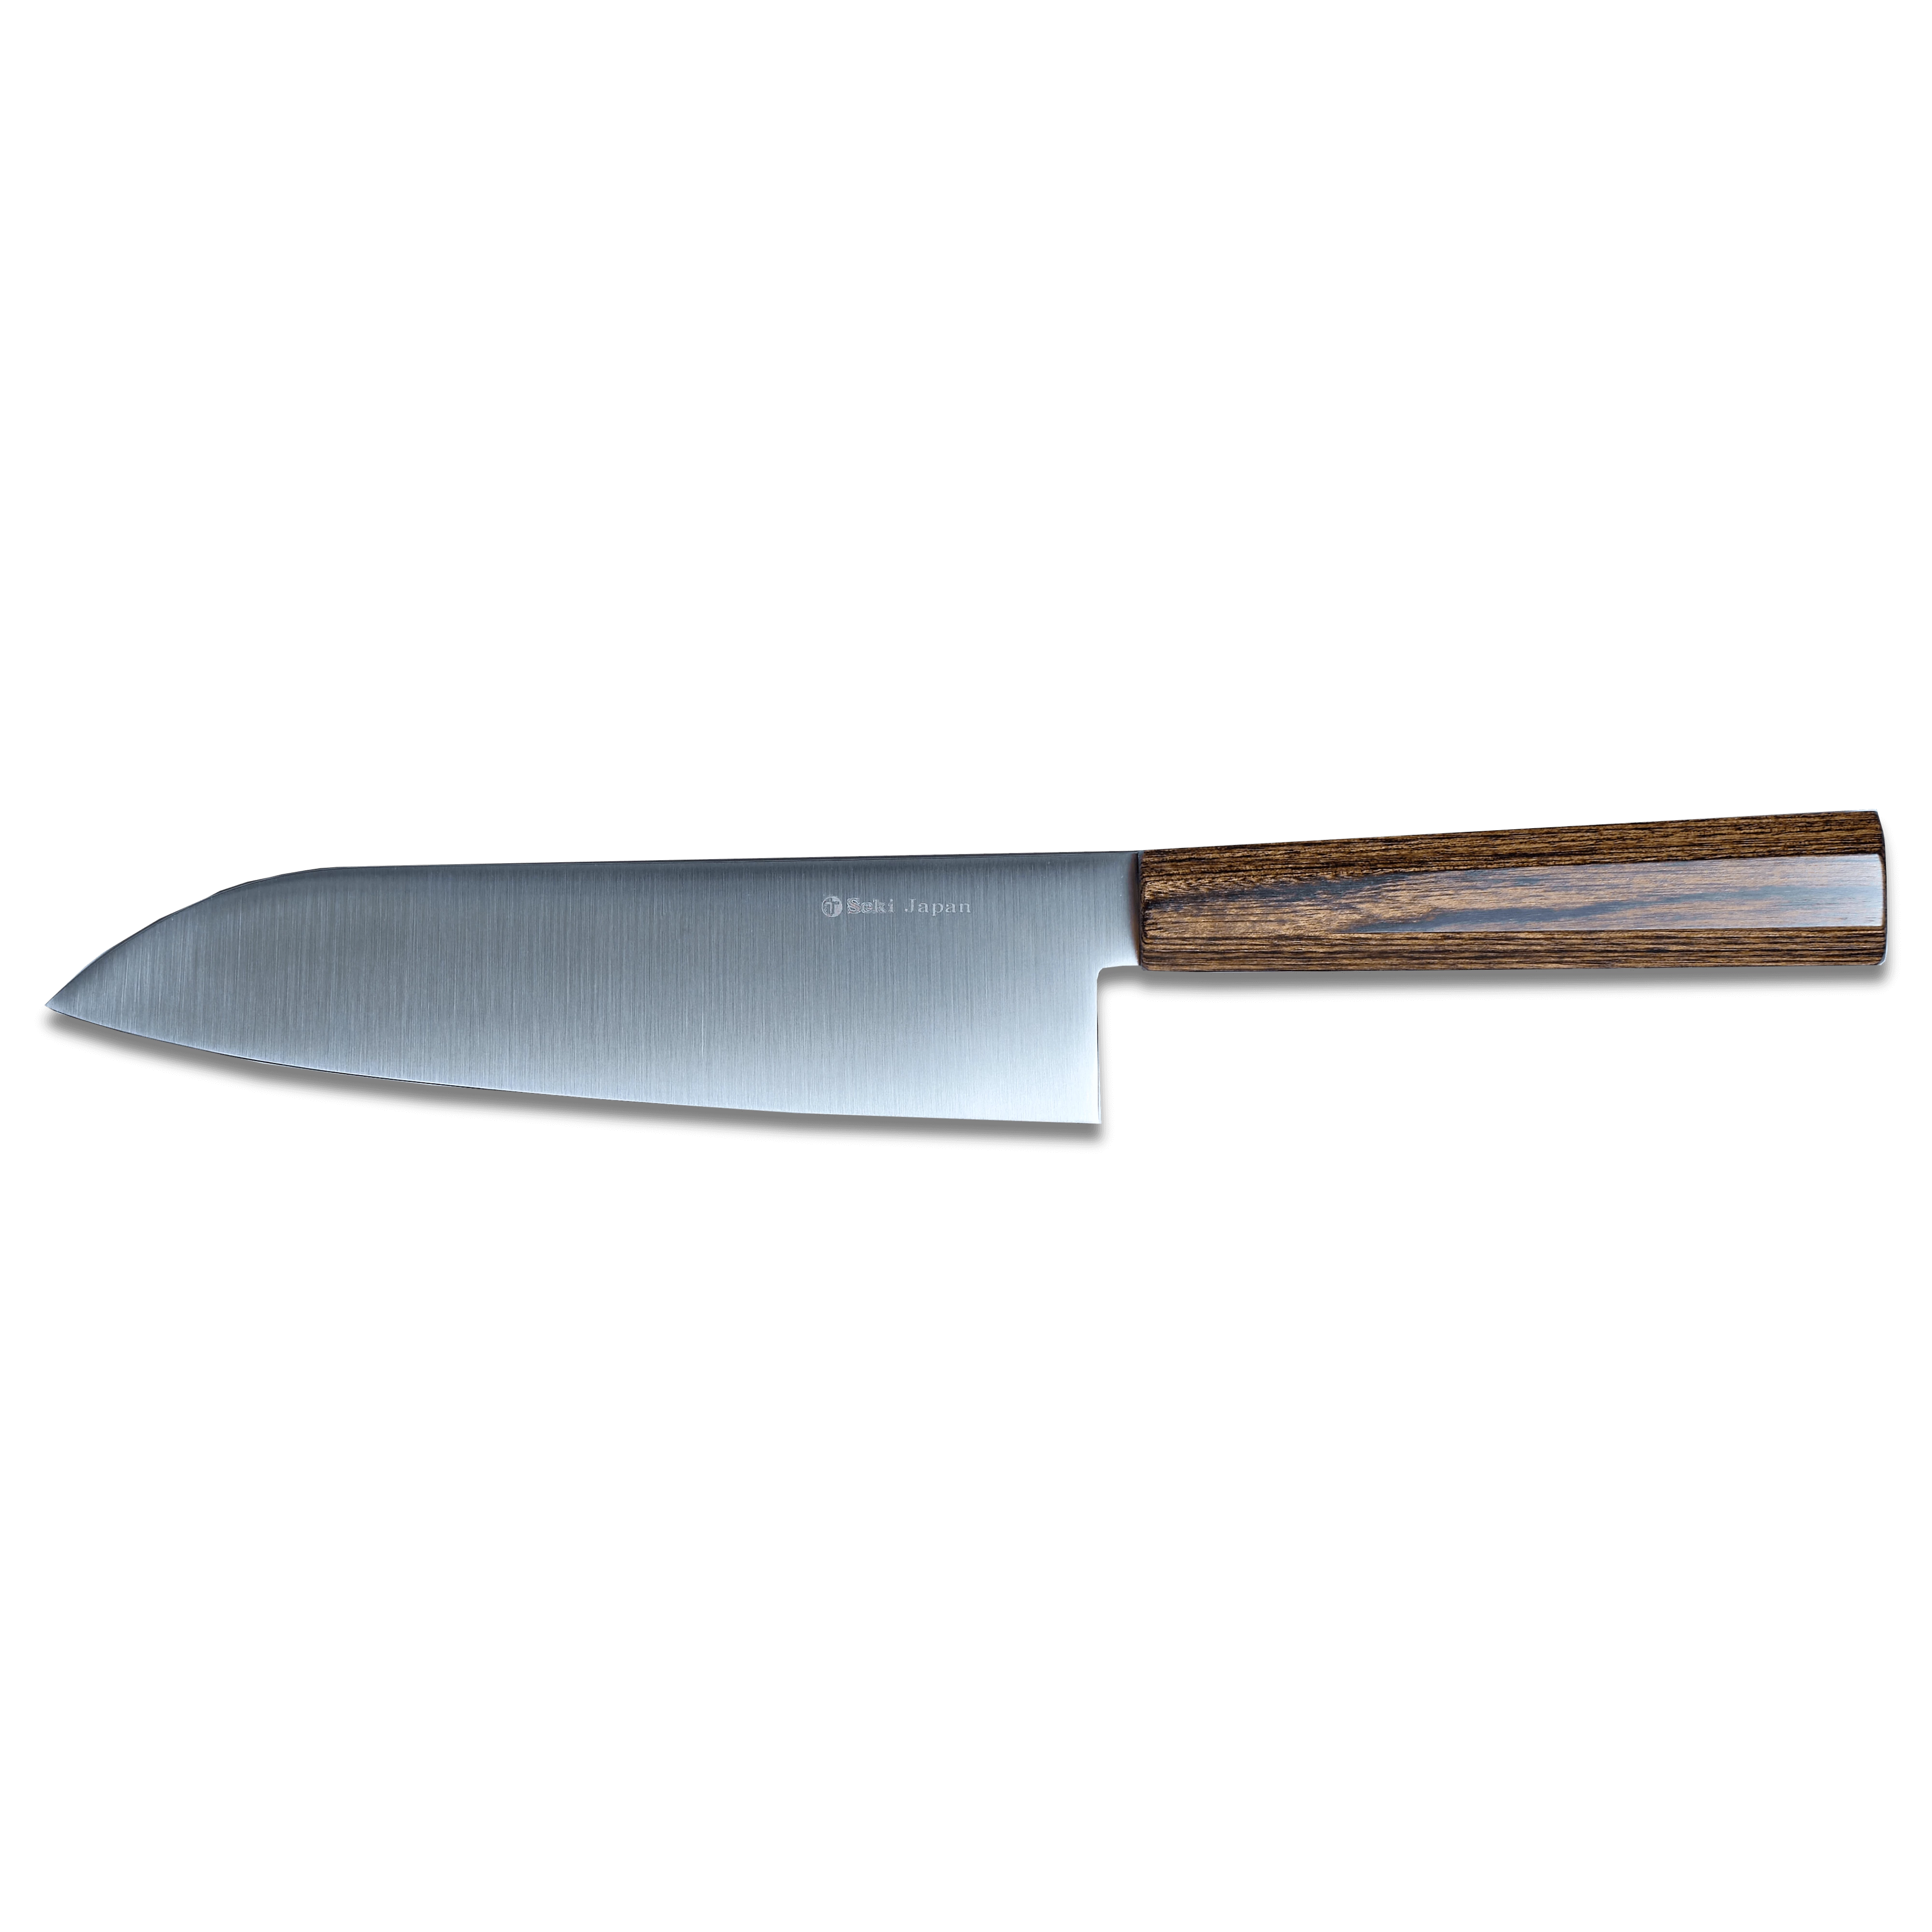 Couteau Santoku Série Ichizu 180mm | Fabriqué au Japon